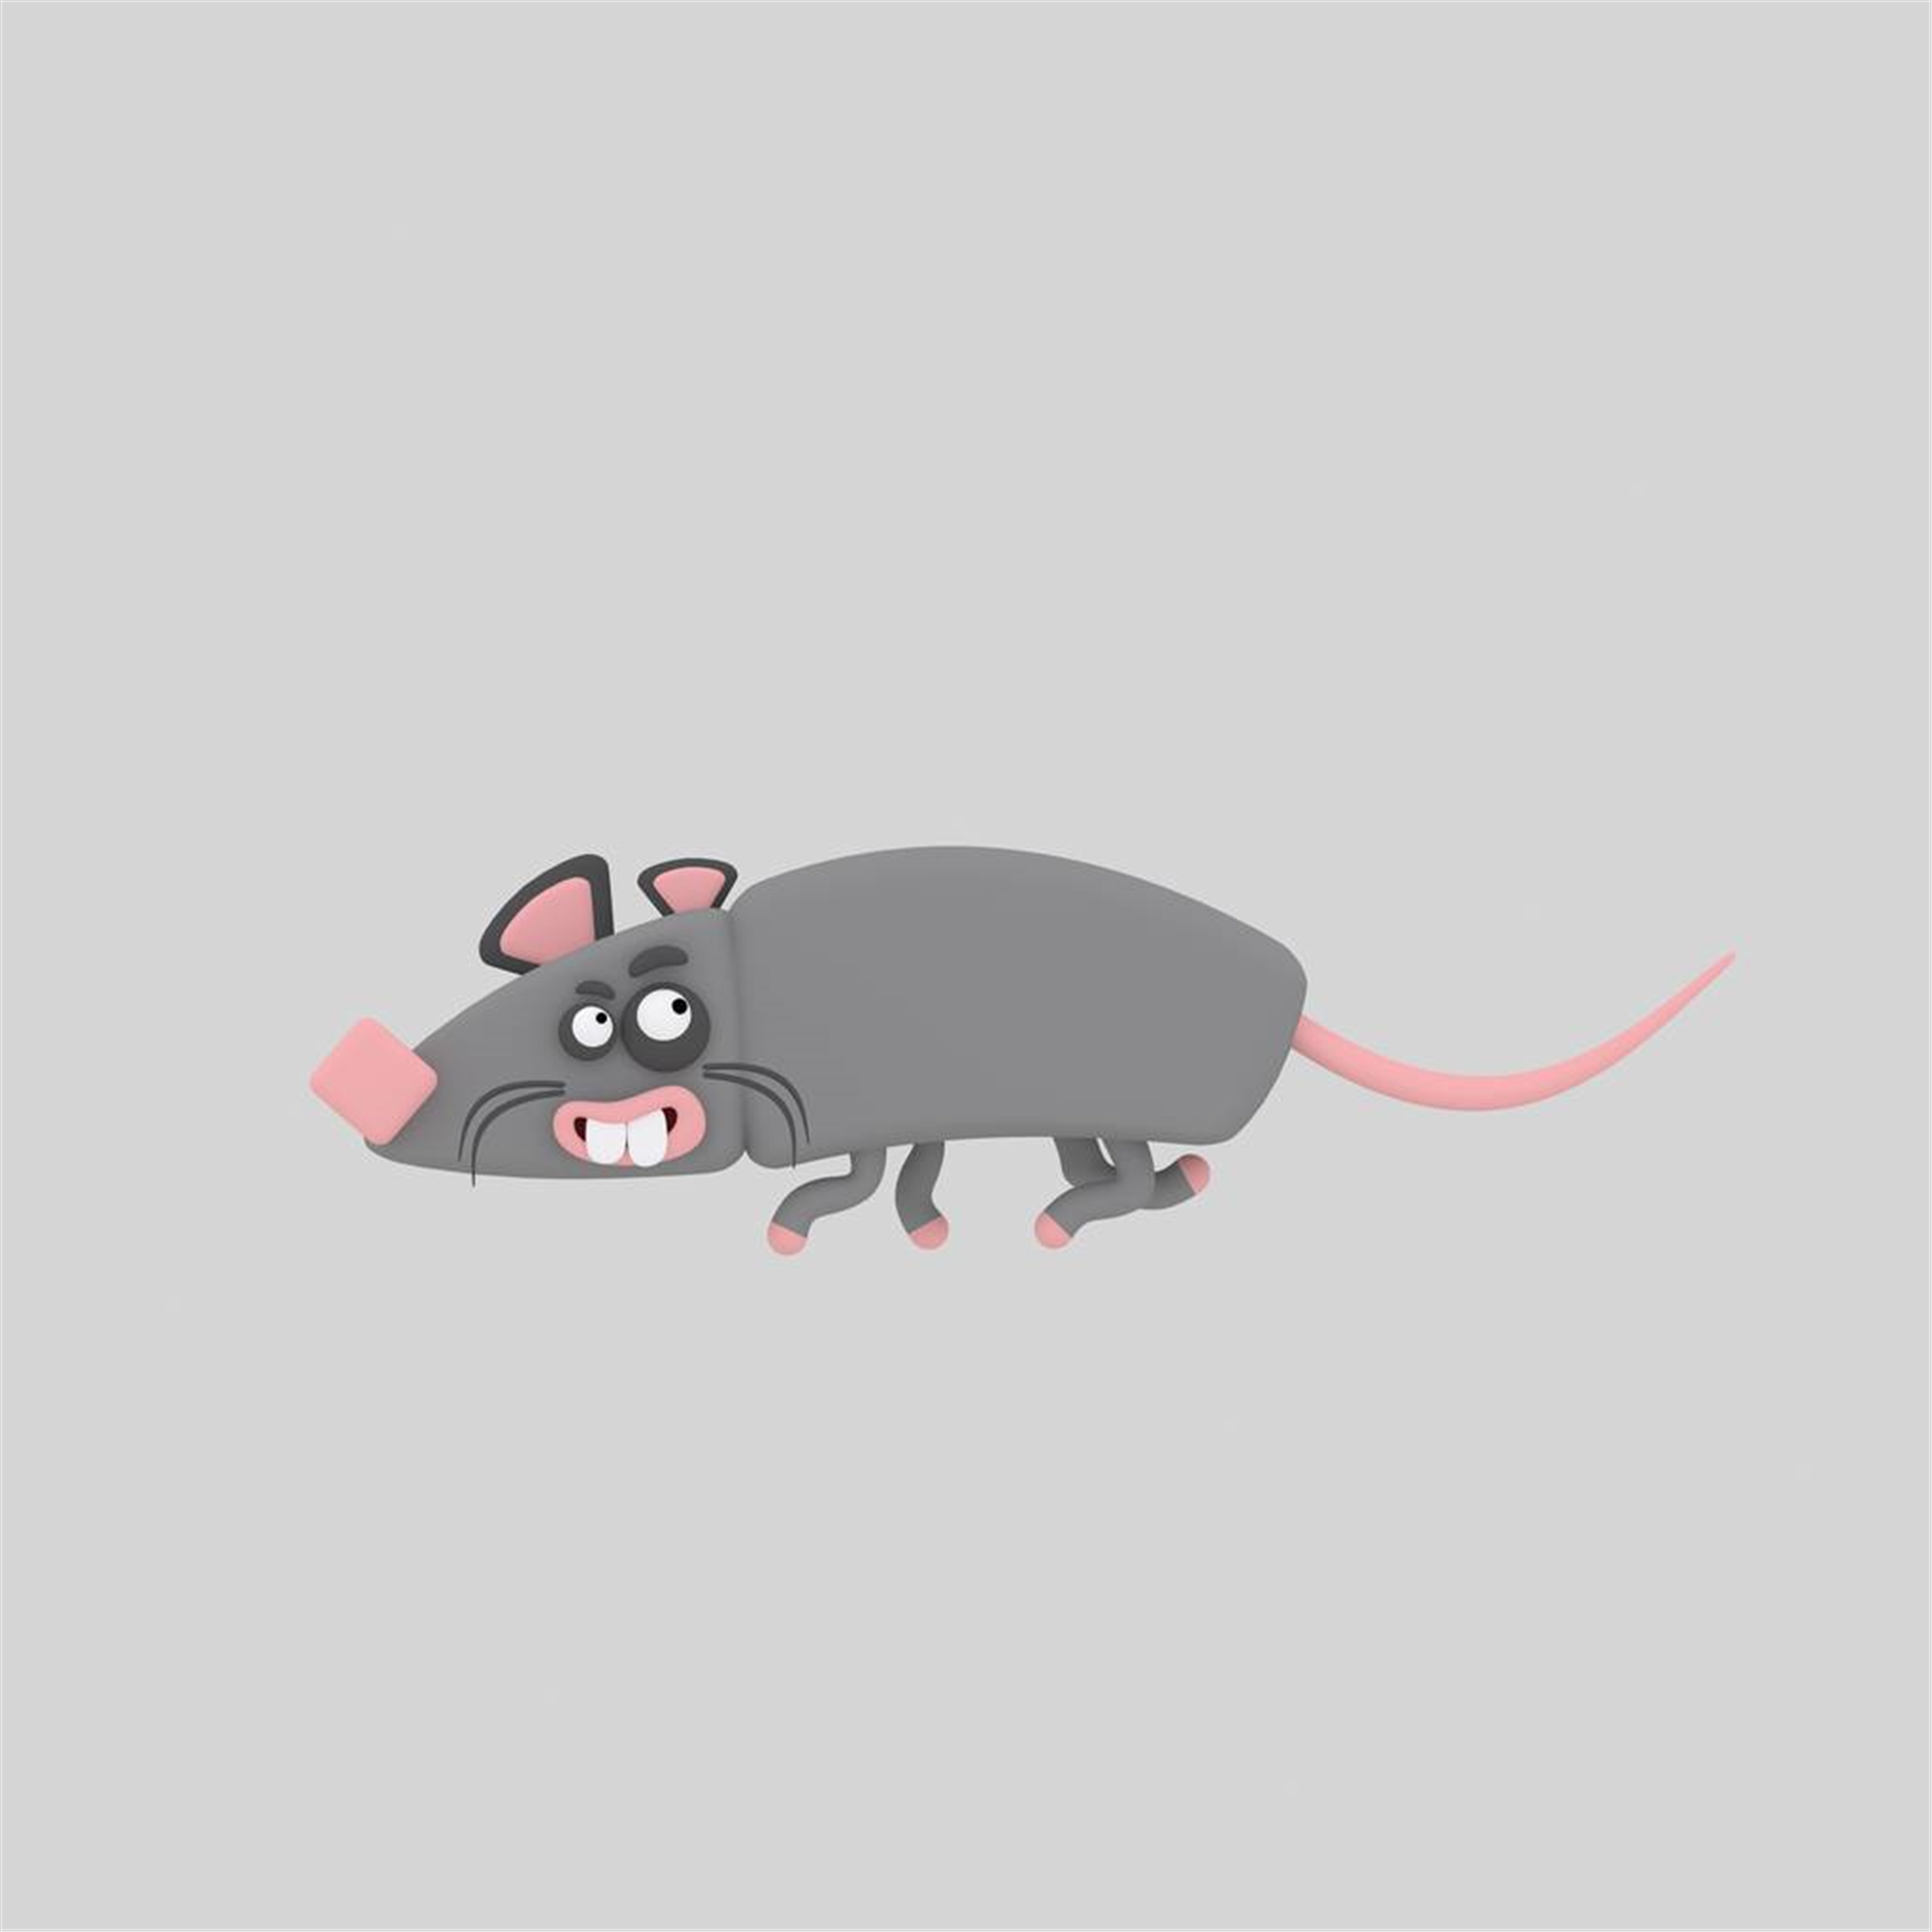 984年属鼠的最难熬年龄 35岁属鼠的人的终生寿命